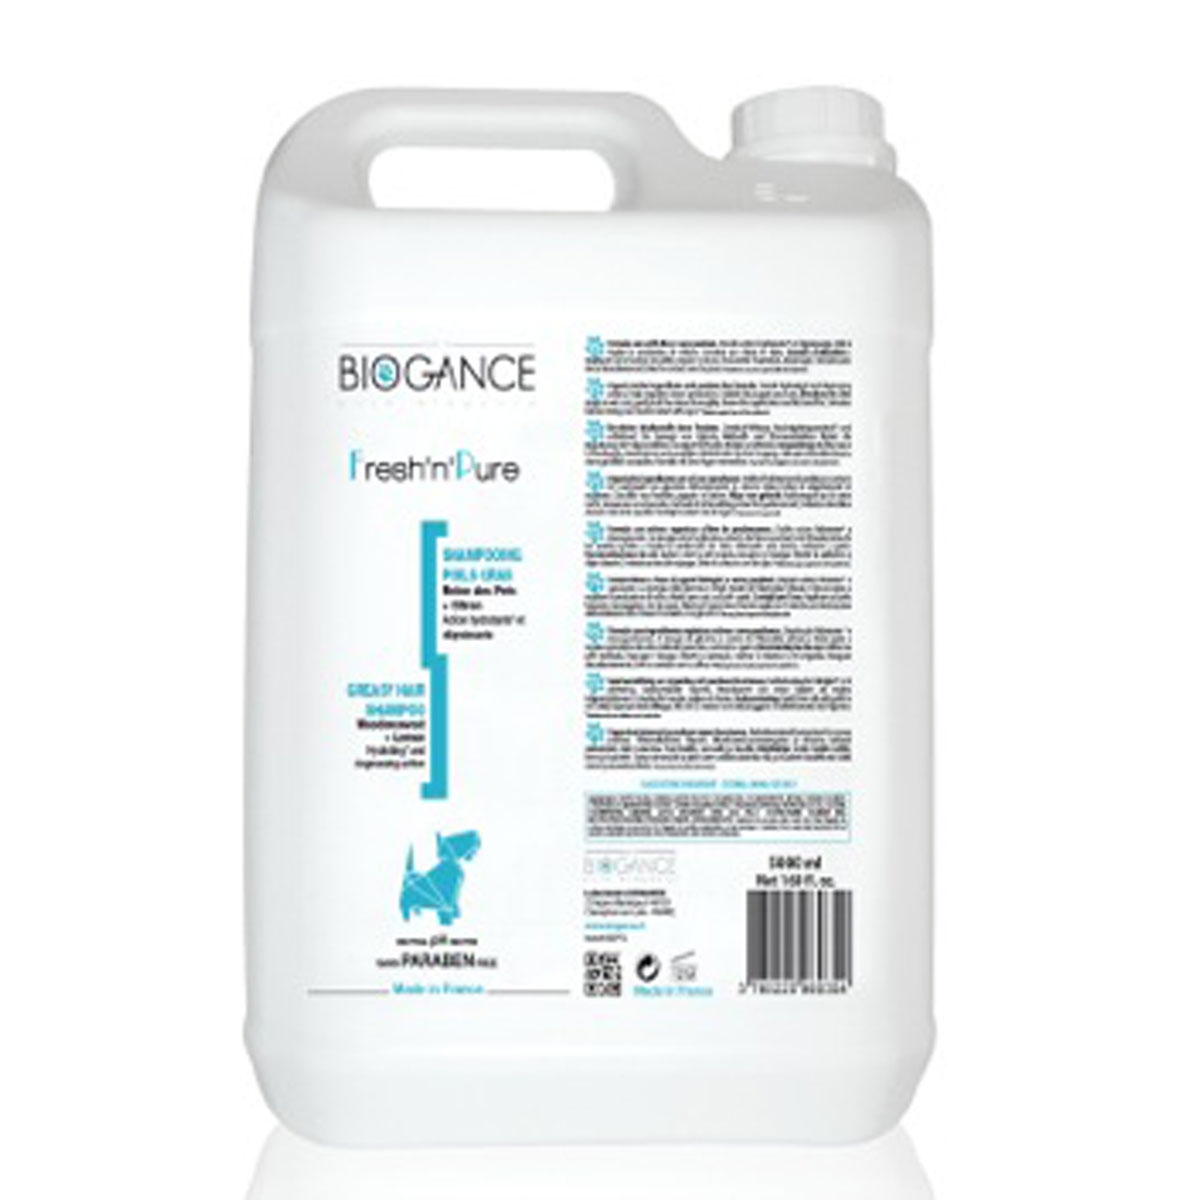 Biogance Hundeshampoo FreshnPure 5L